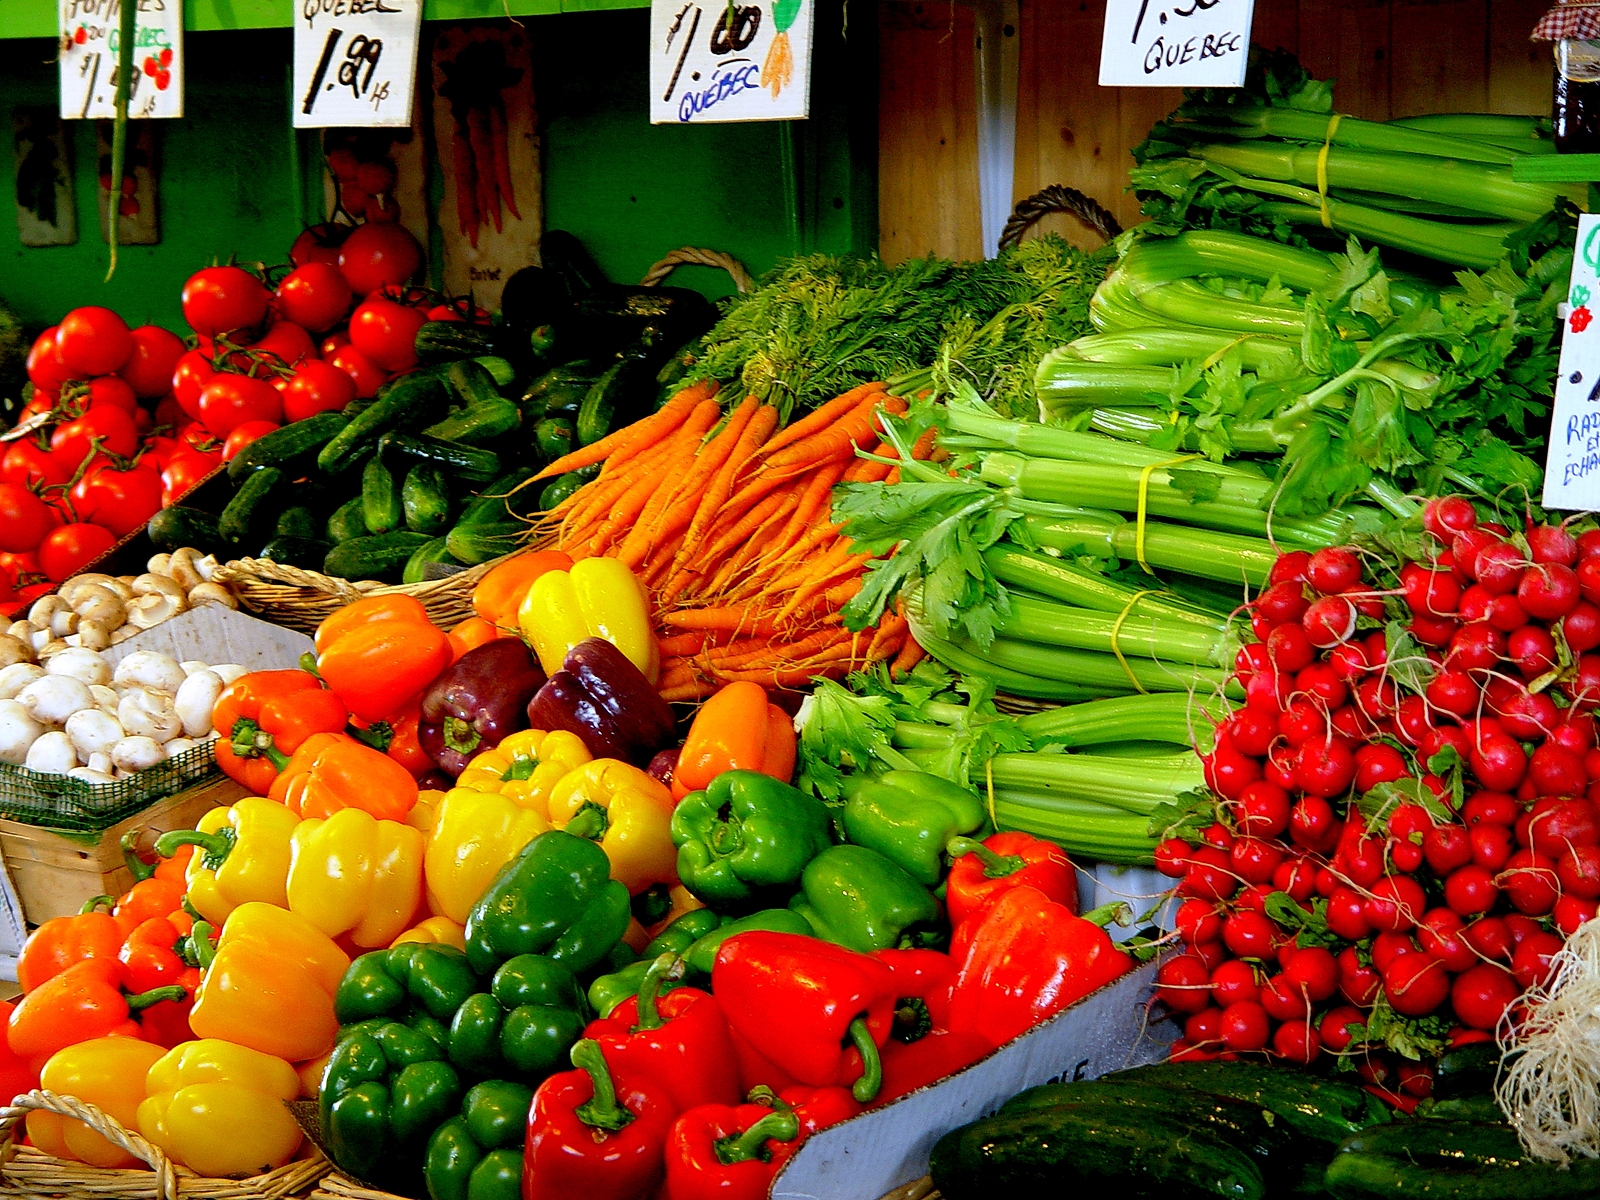 Featured market. Овощи на прилавке. Ассортимент овощей. Овощи и фрукты. Свежие овощи и фрукты.